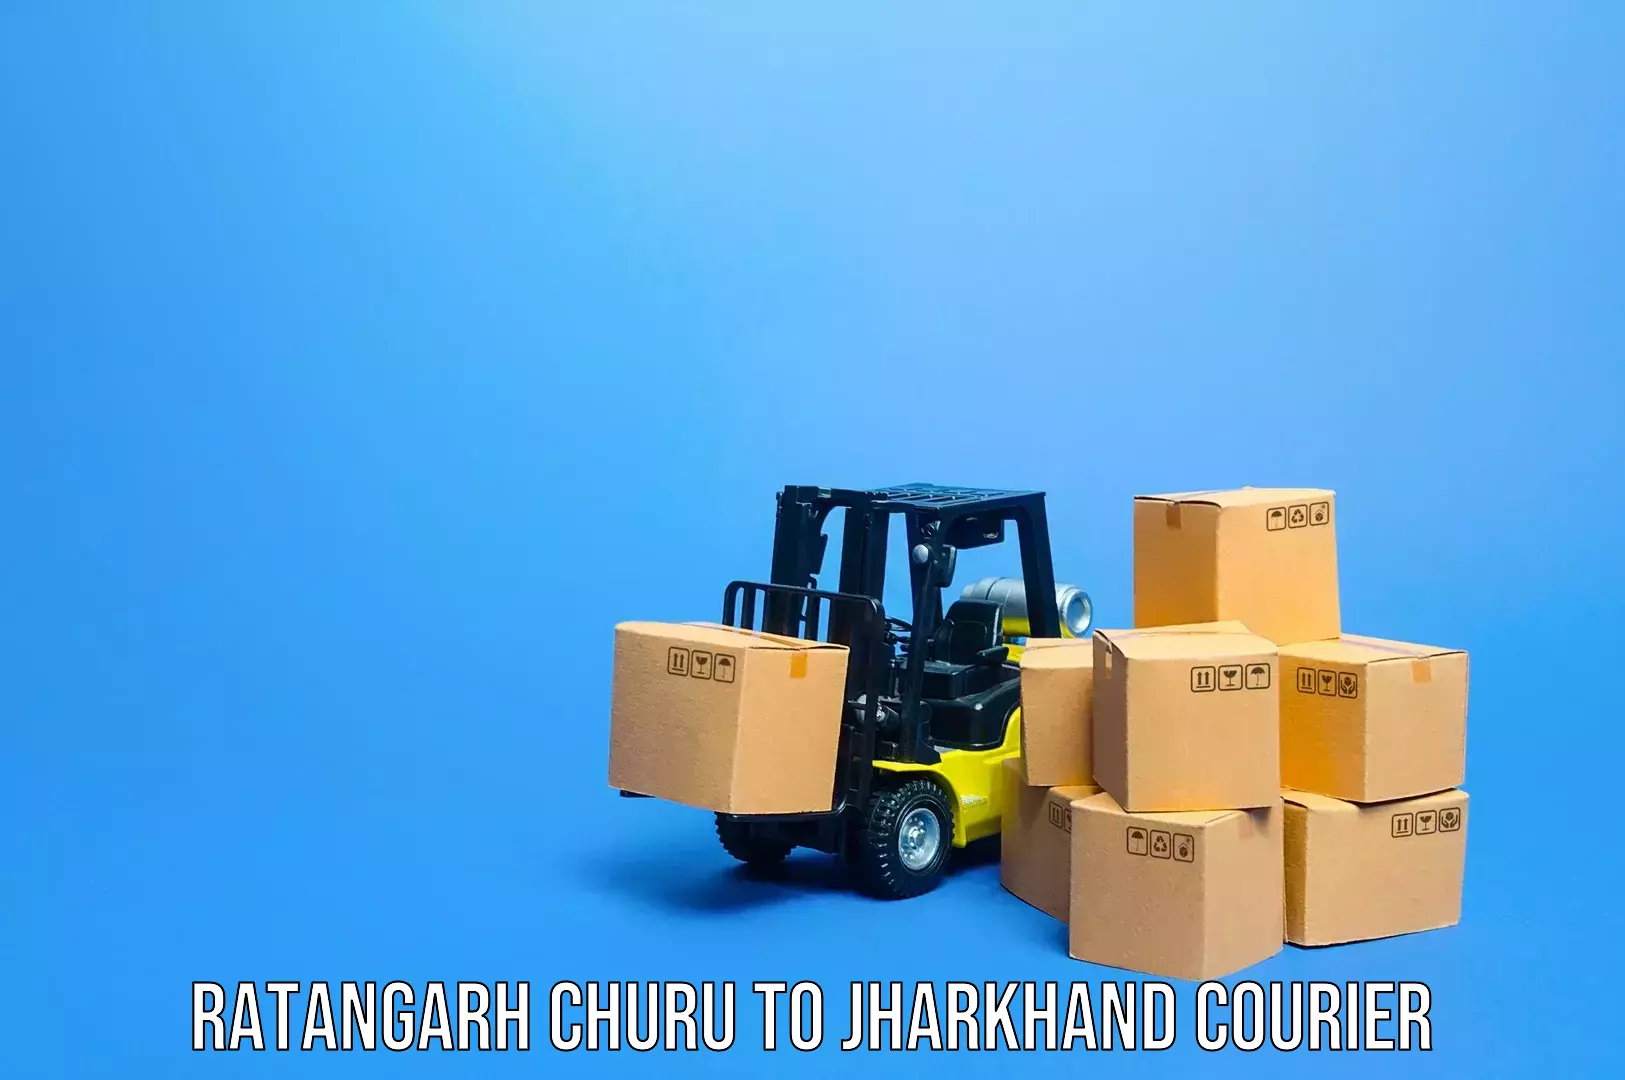 Luggage transfer service Ratangarh Churu to Tandwa